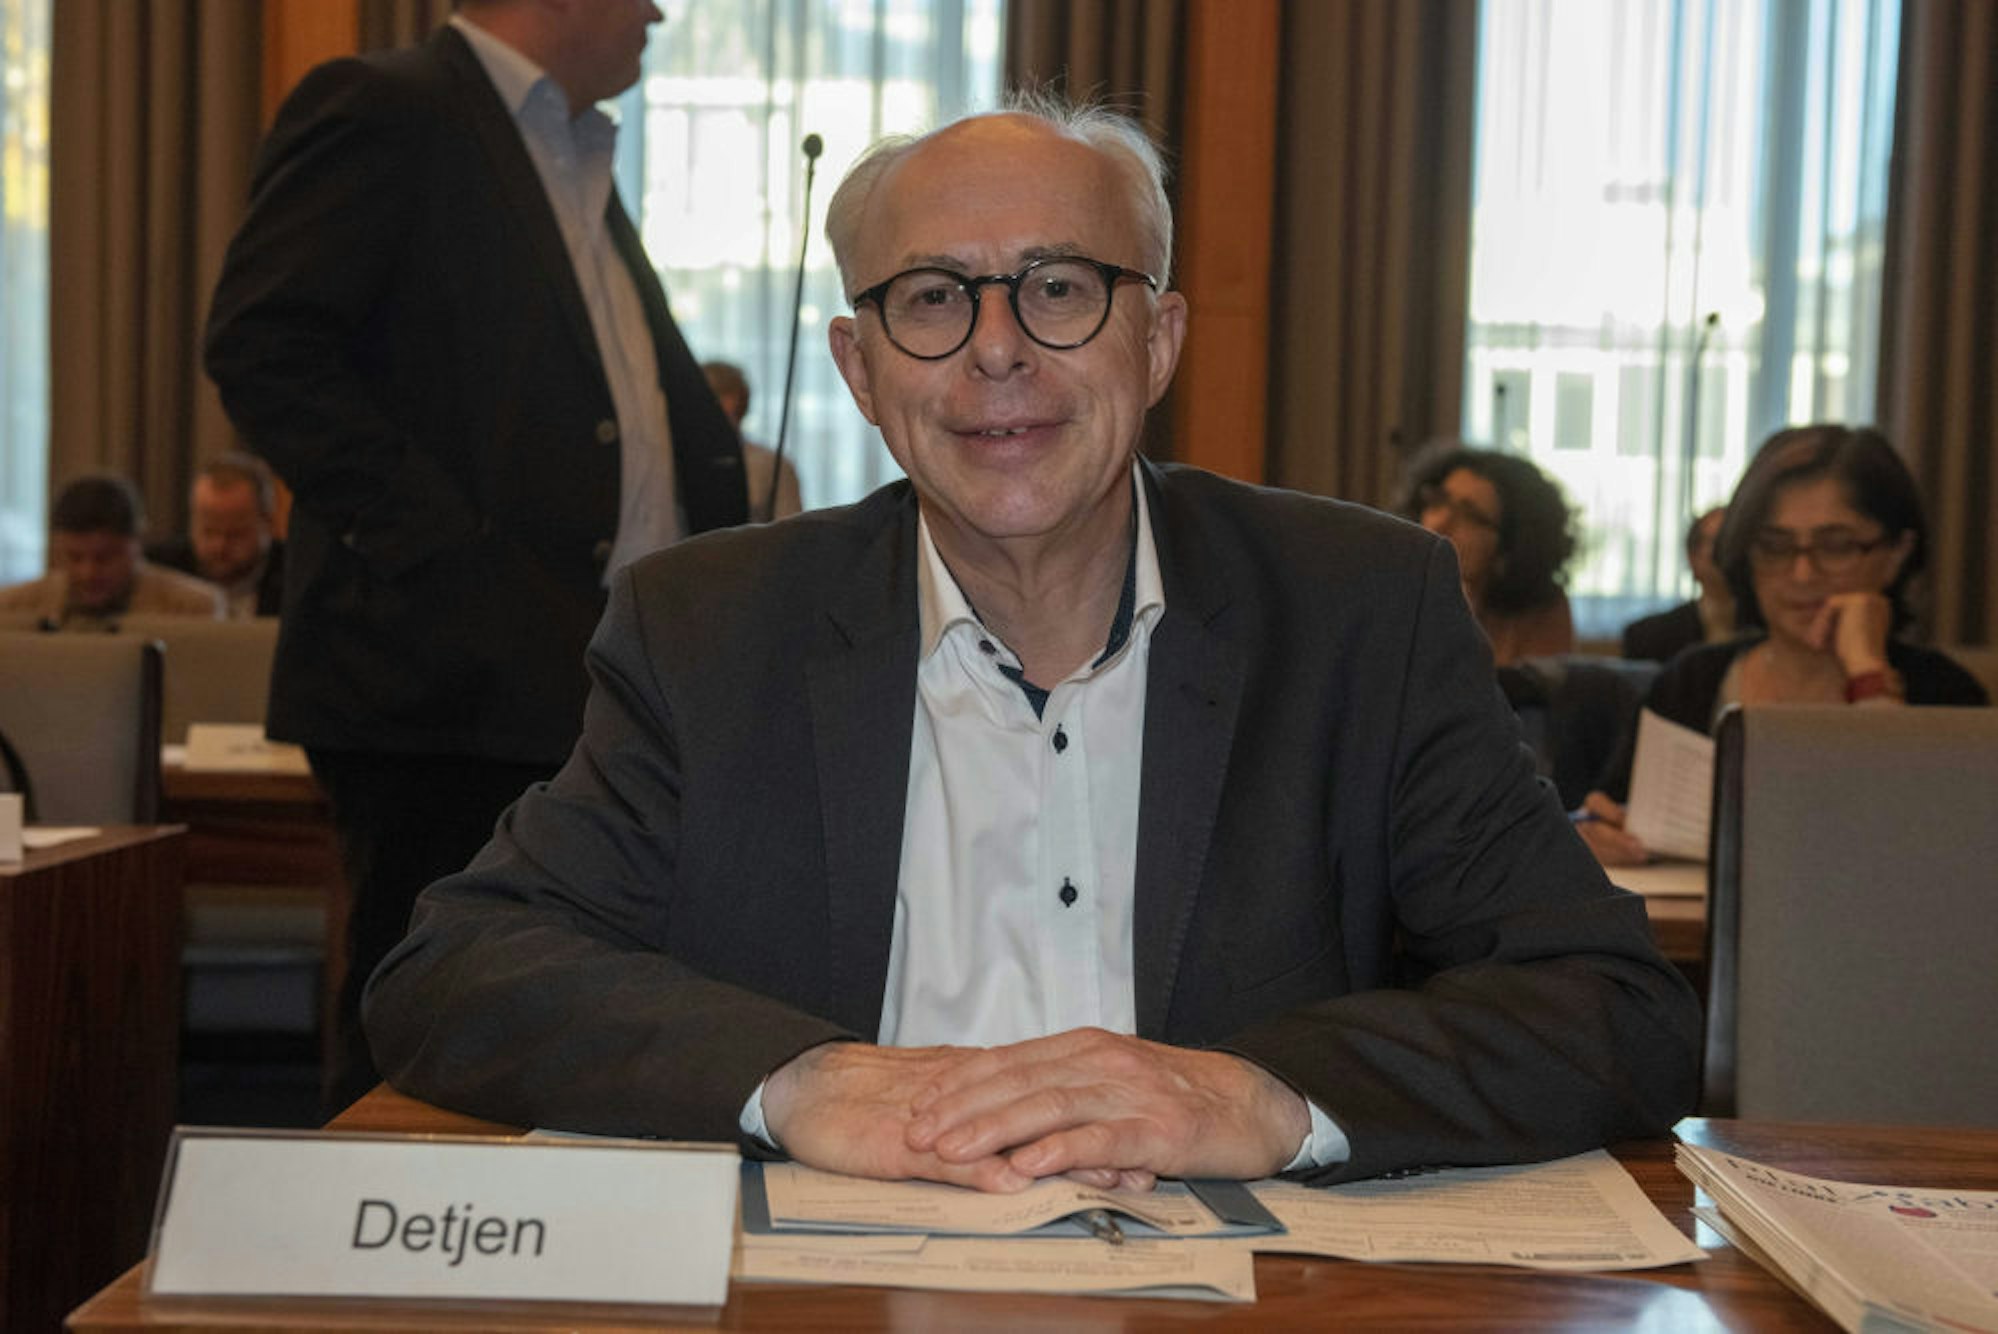 Jörg Detjen, Fraktionschef der Linken im Rat